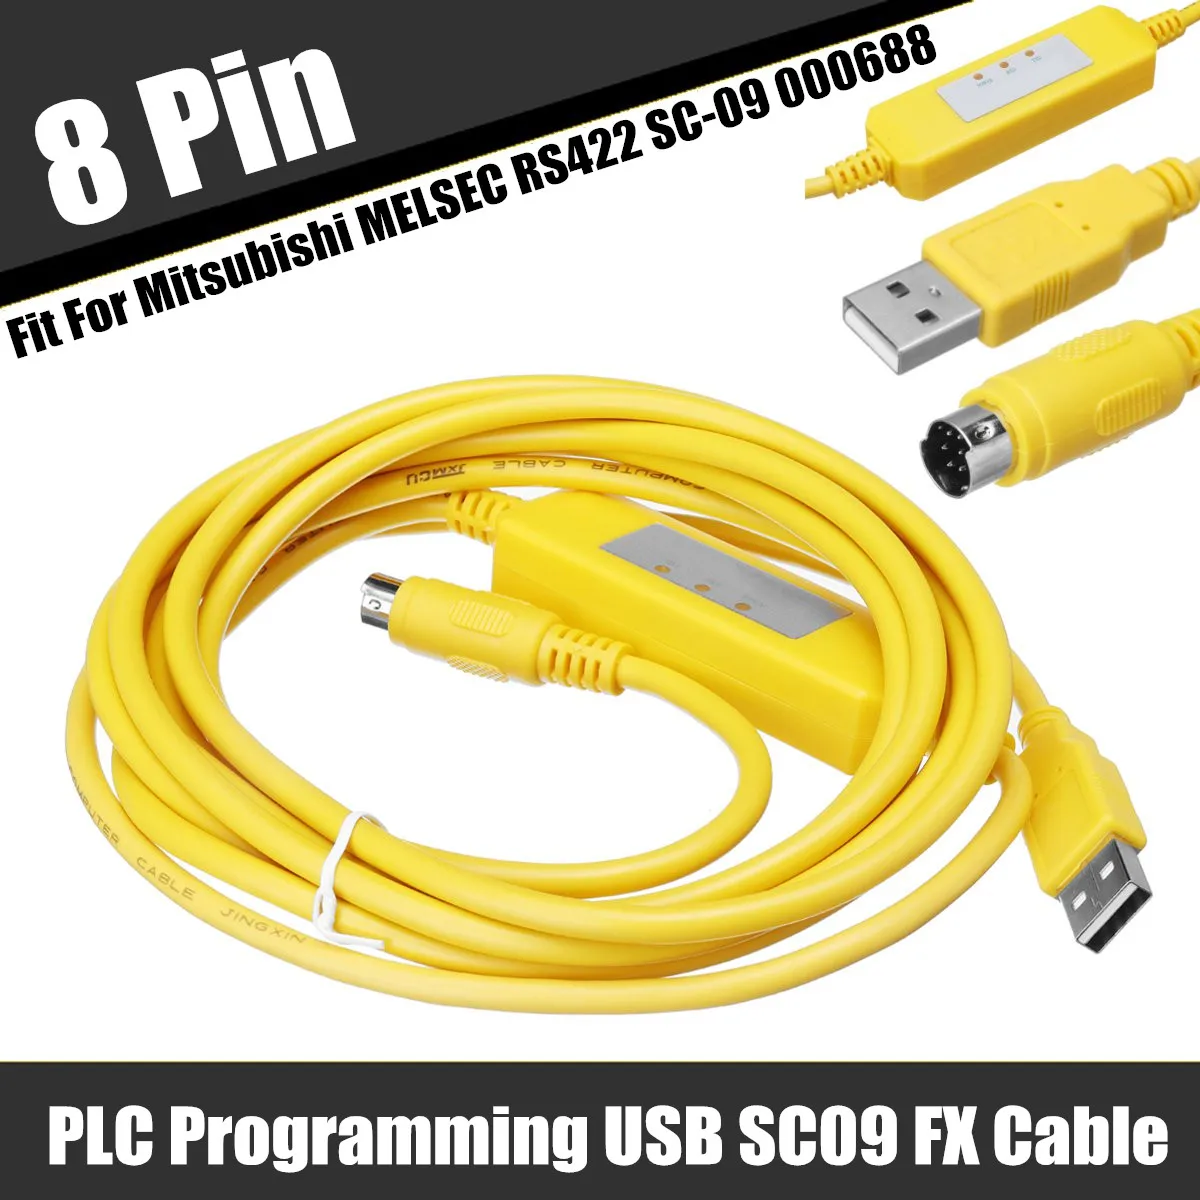 PLC Программирование USB-SC09-FX кабель 8 Pin для Mitsubishi MELSEC RS422 SC-09 000688 с индикатором связи Новые